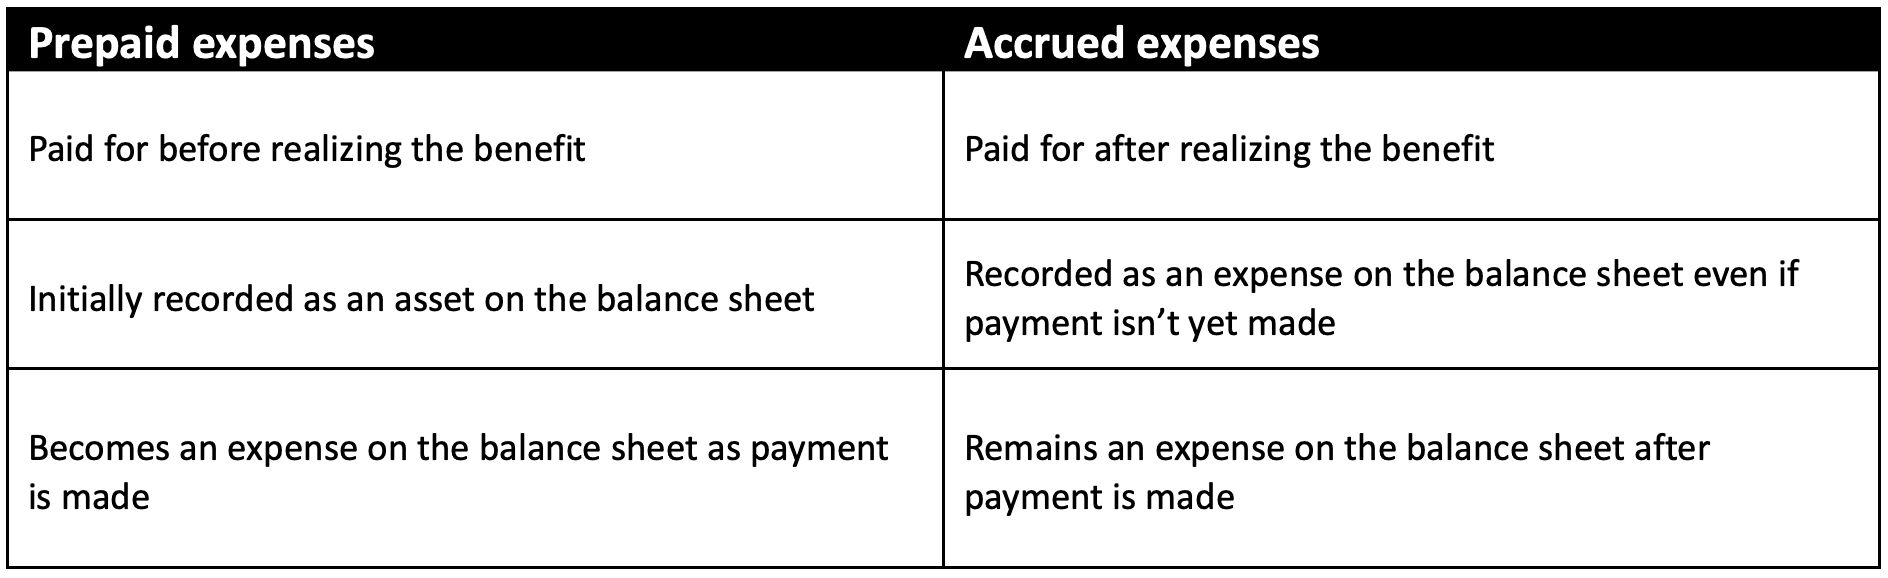 Prepaid expenses vs. accrued expenses